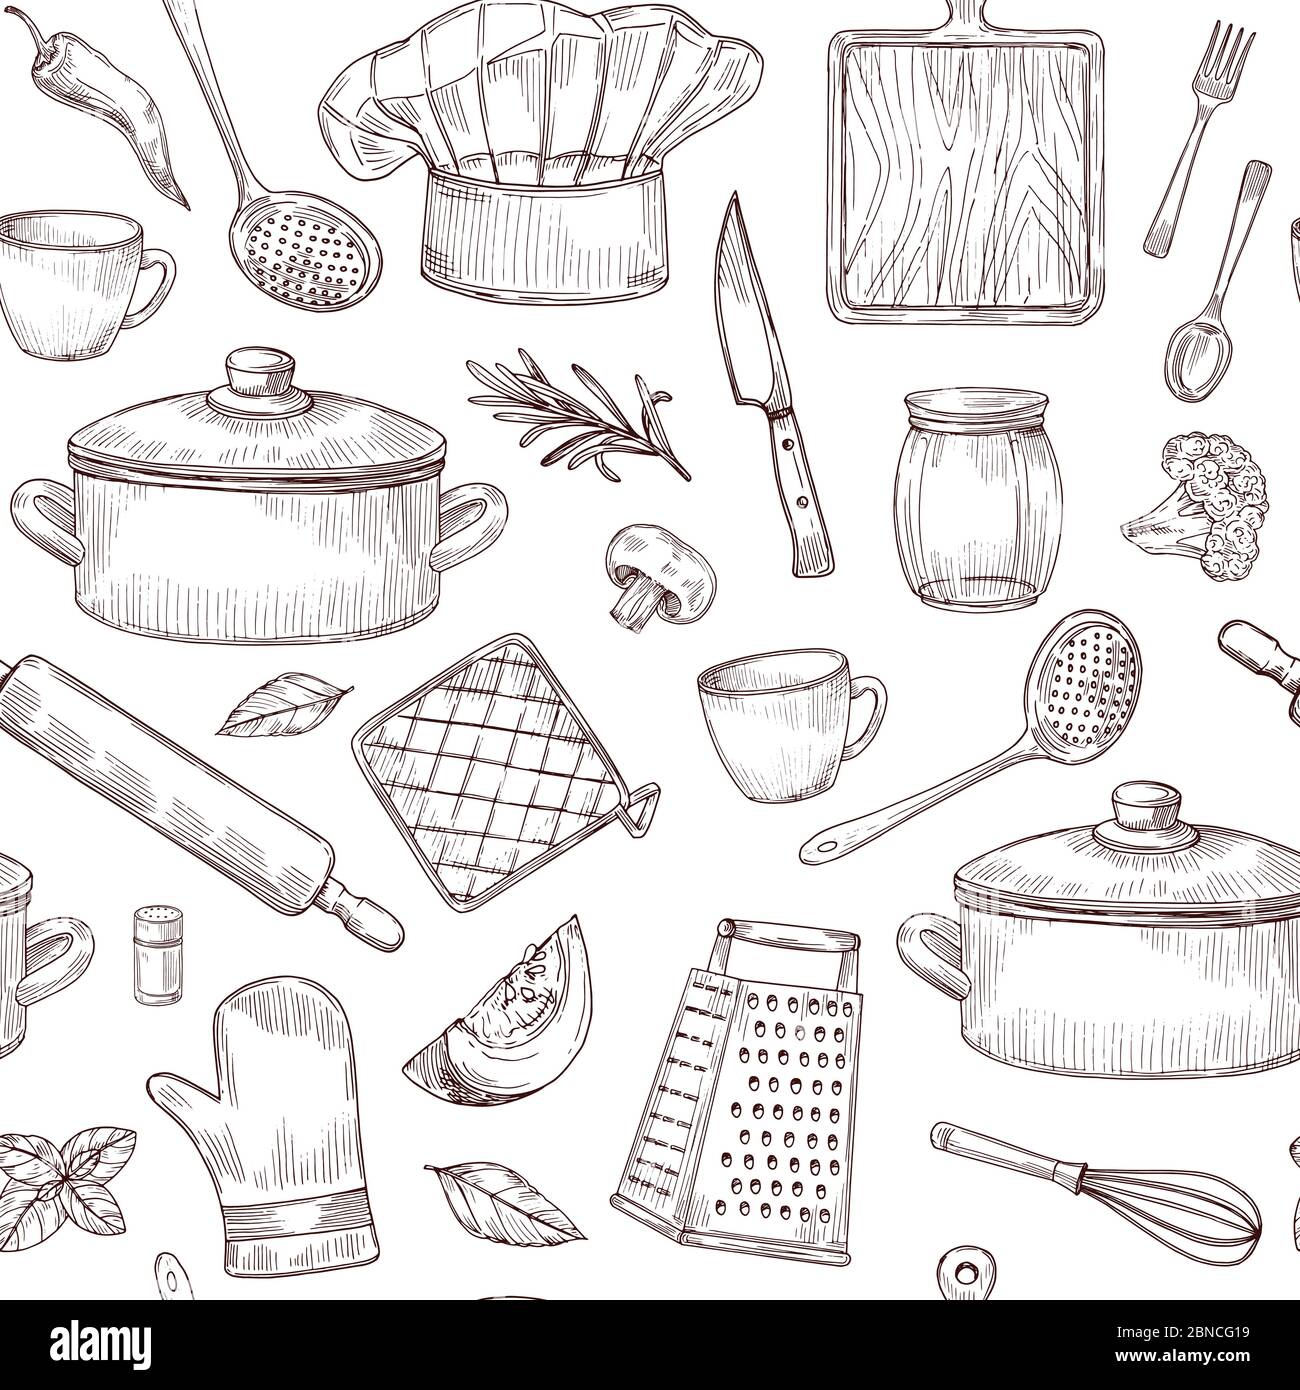 Küchenwerkzeuge nahtloses Muster. Skizze Kochutensilien Hand gezeichnete Geschirr. Eingravierte Küche Elemente Vektor Hintergrund. Küchenutensilien, Kochgeschirr, Kochtopf und Löffel Illustration Stock Vektor